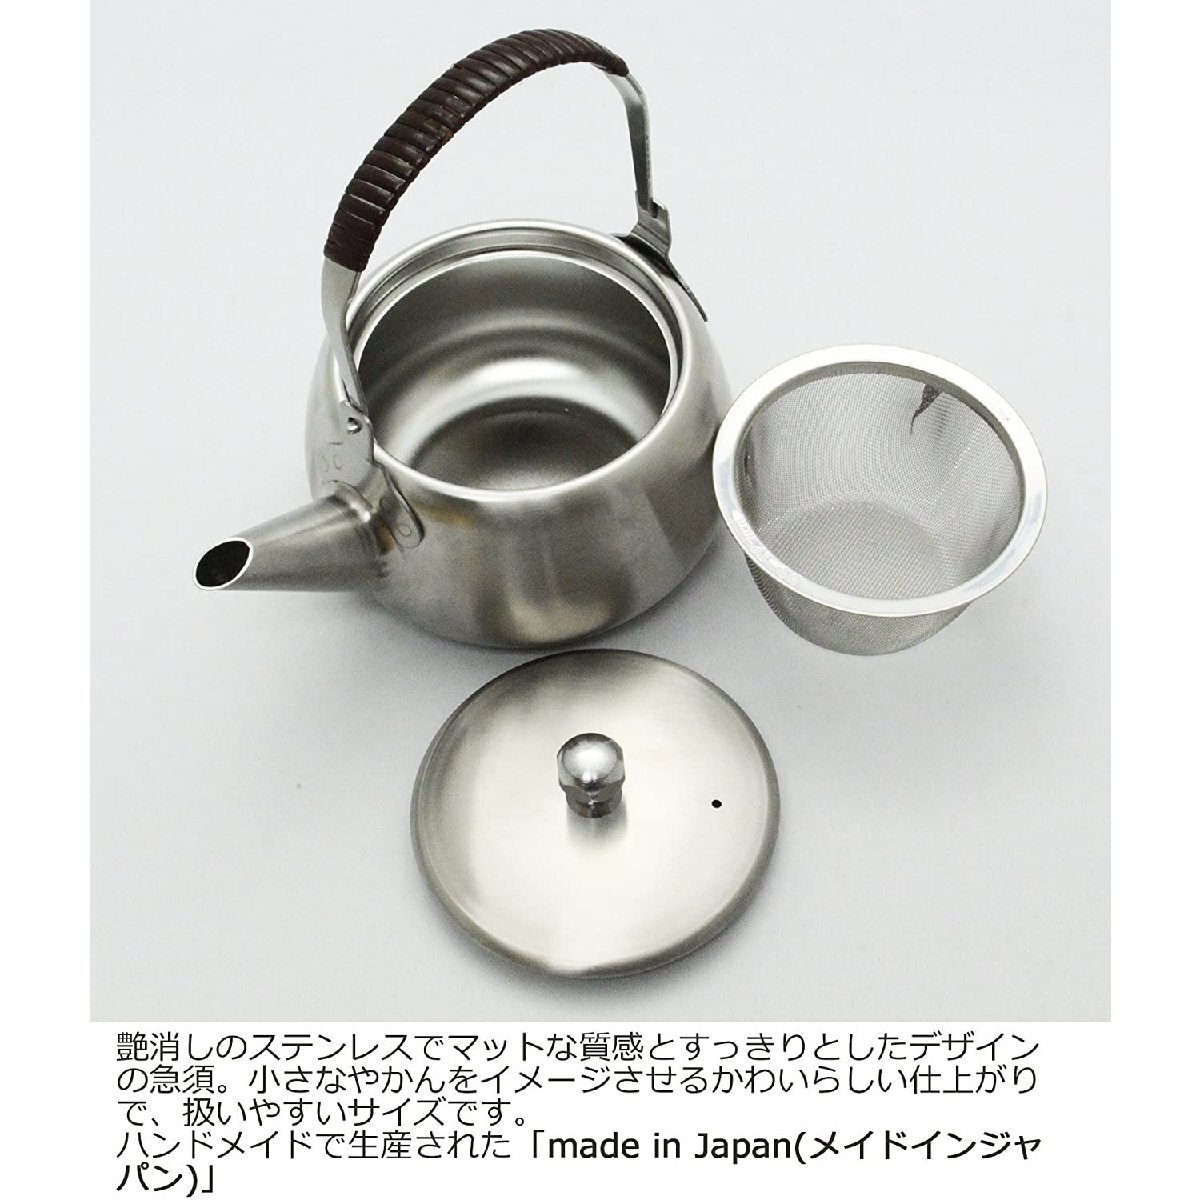 マットな質感 艶消しの ステンレス急須 360ml 日本製 茶こし付き すべりにくくつまみ易い すっきりとしたデザイン_画像2